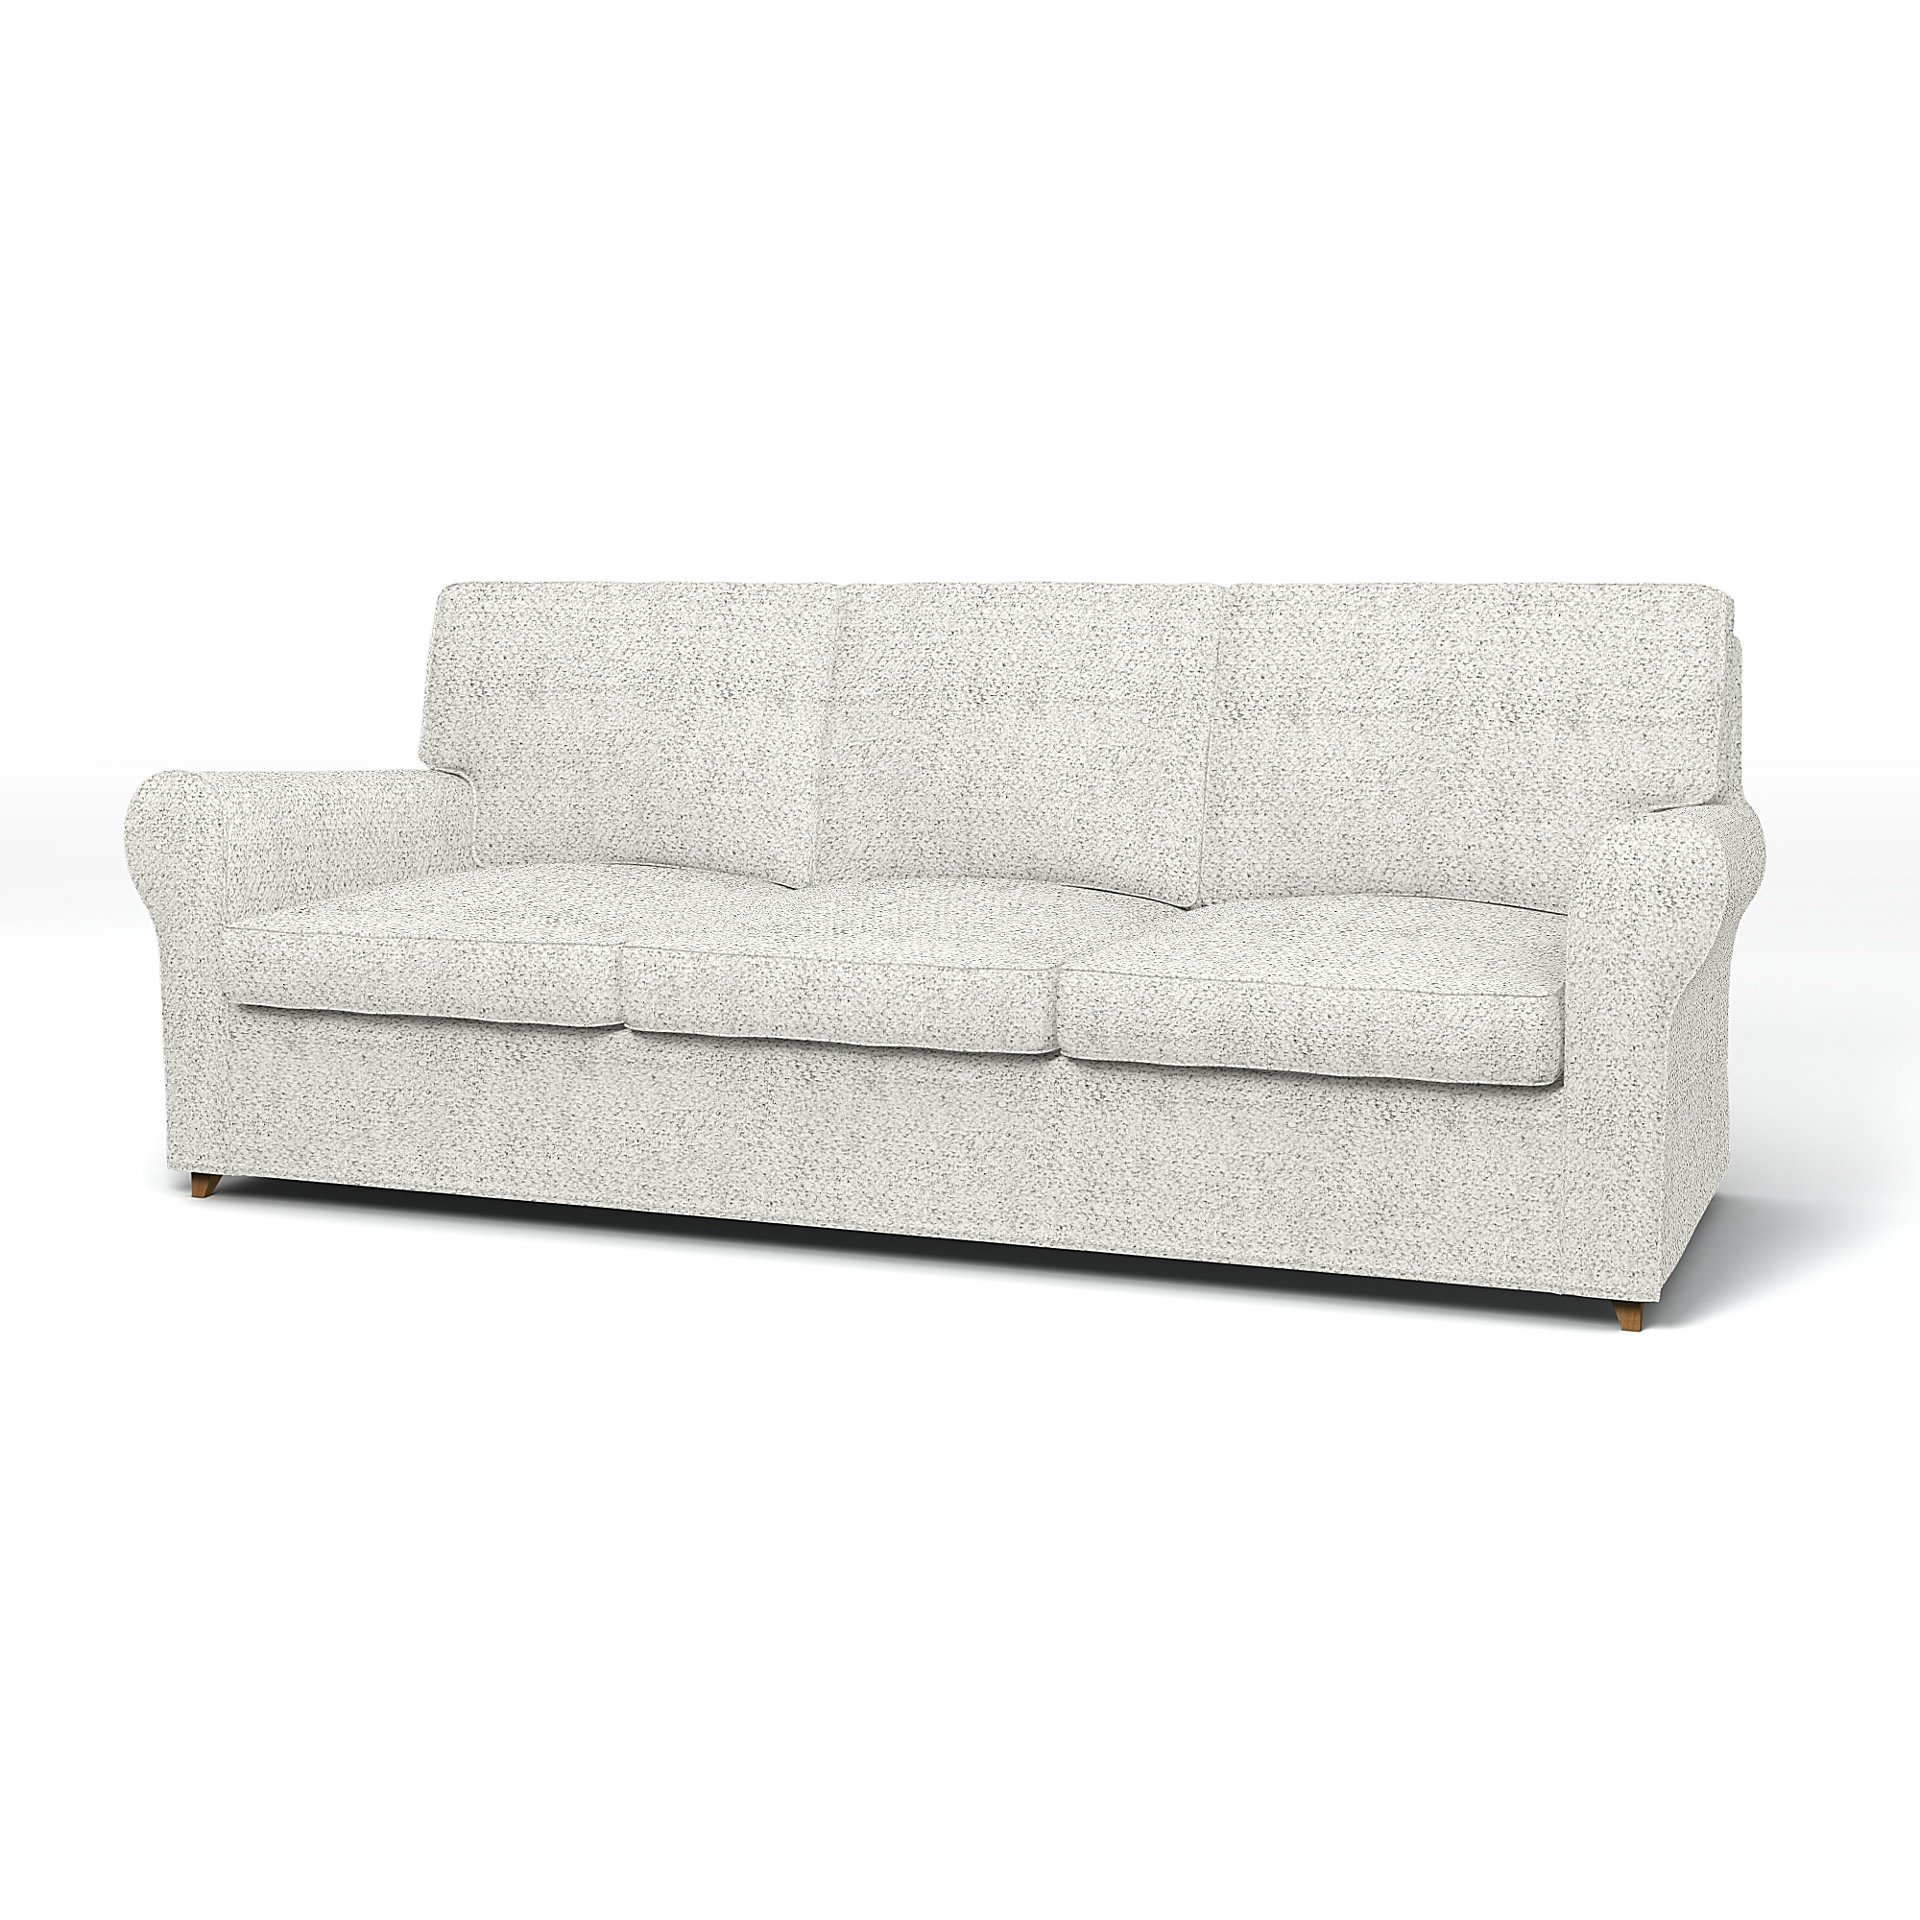 Decoderen in verlegenheid gebracht Experiment Shop IKEA Ängby Sofa Covers & Couch Covers | Bemz